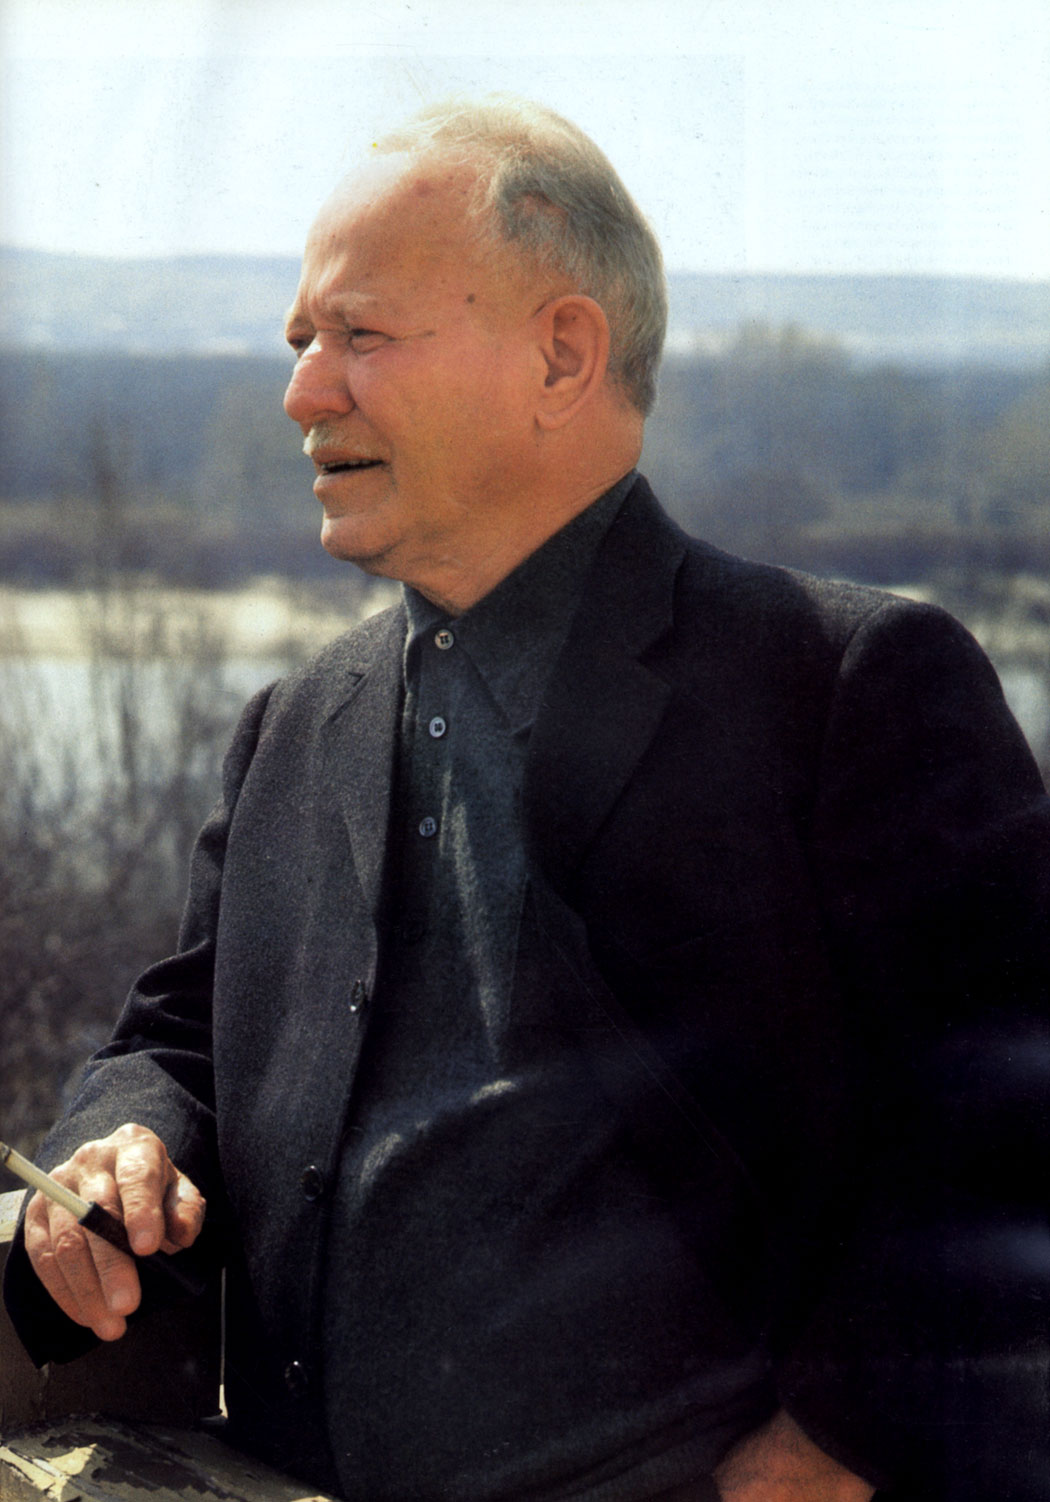 Михаил Александрович Шолохов